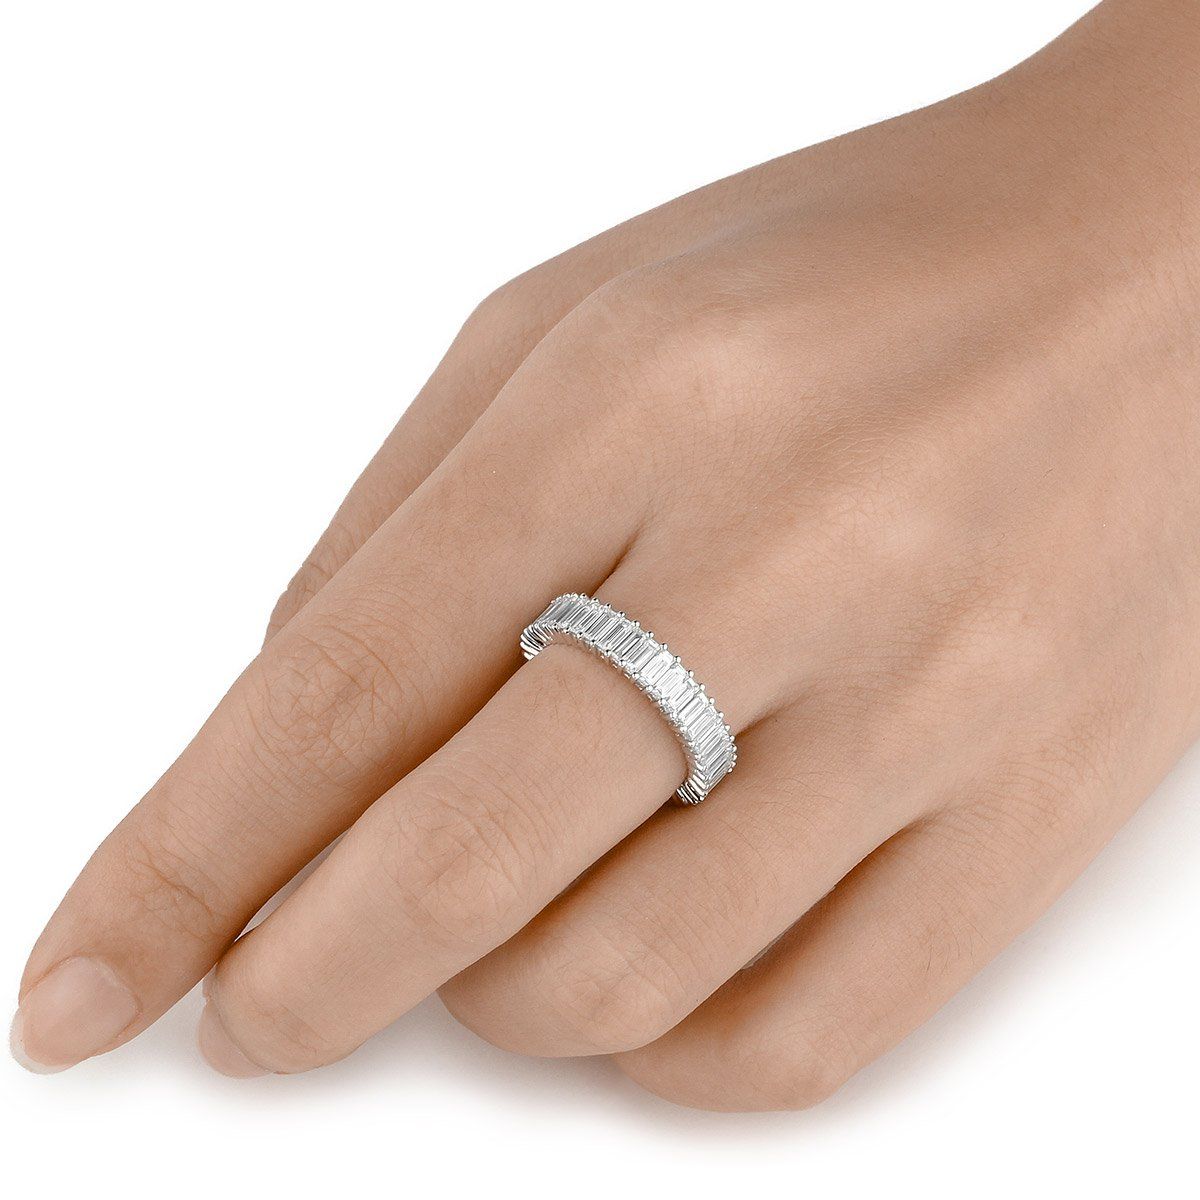  White Diamond Ring, 2.23 Ct. TW, Baguette shape